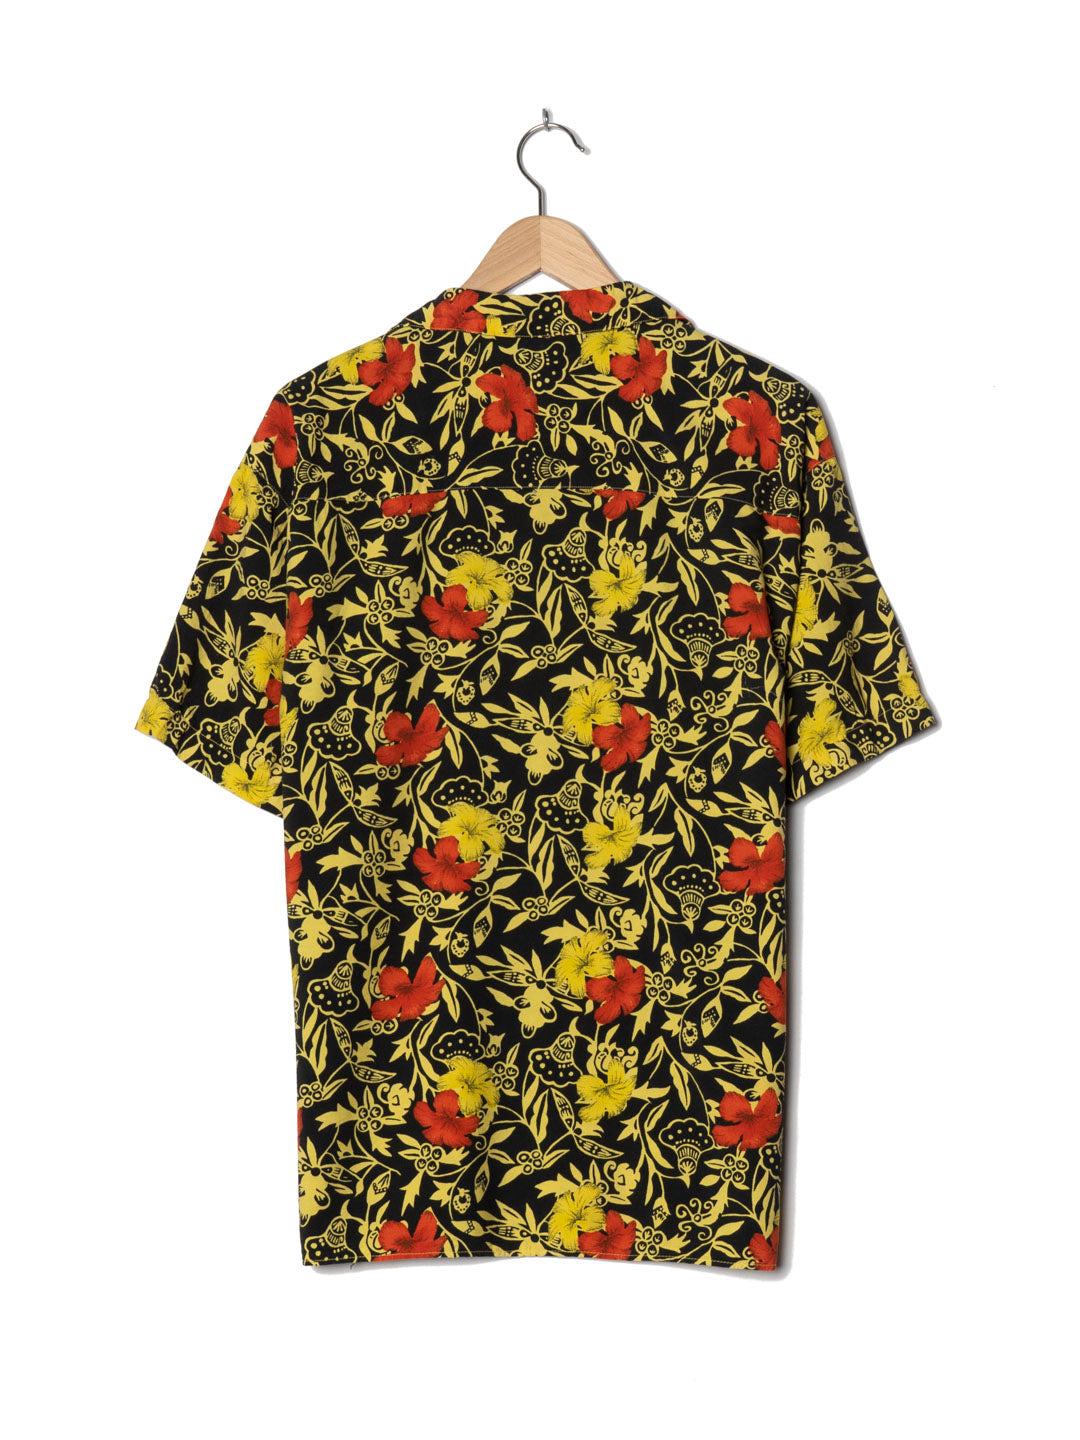 Vinokilo Mixed Colours Hawaiian Shirt